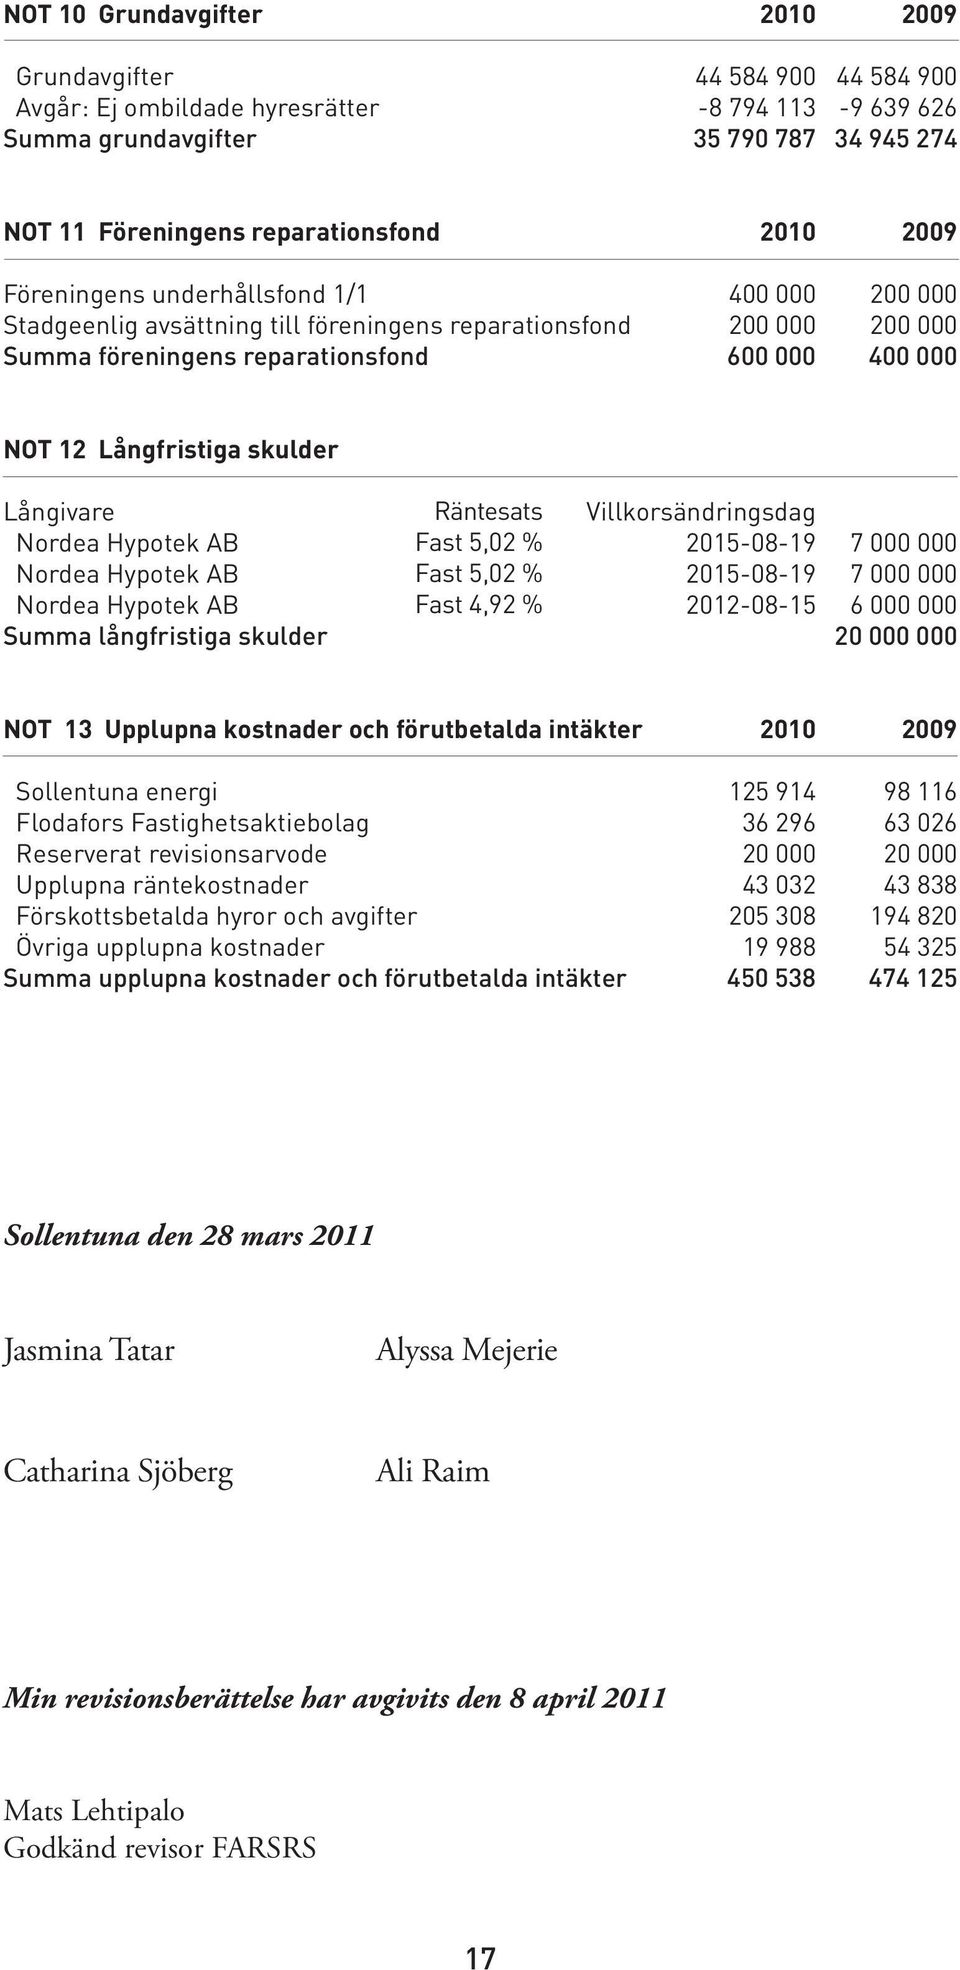 Nordea Hypotek AB Nordea Hypotek AB Nordea Hypotek AB Summa långfristiga skulder Räntesats Fast 5,02 % Fast 5,02 % Fast 4,92 % Villkorsändringsdag 2015-08-19 2015-08-19 2012-08-15 7 000 000 7 000 000